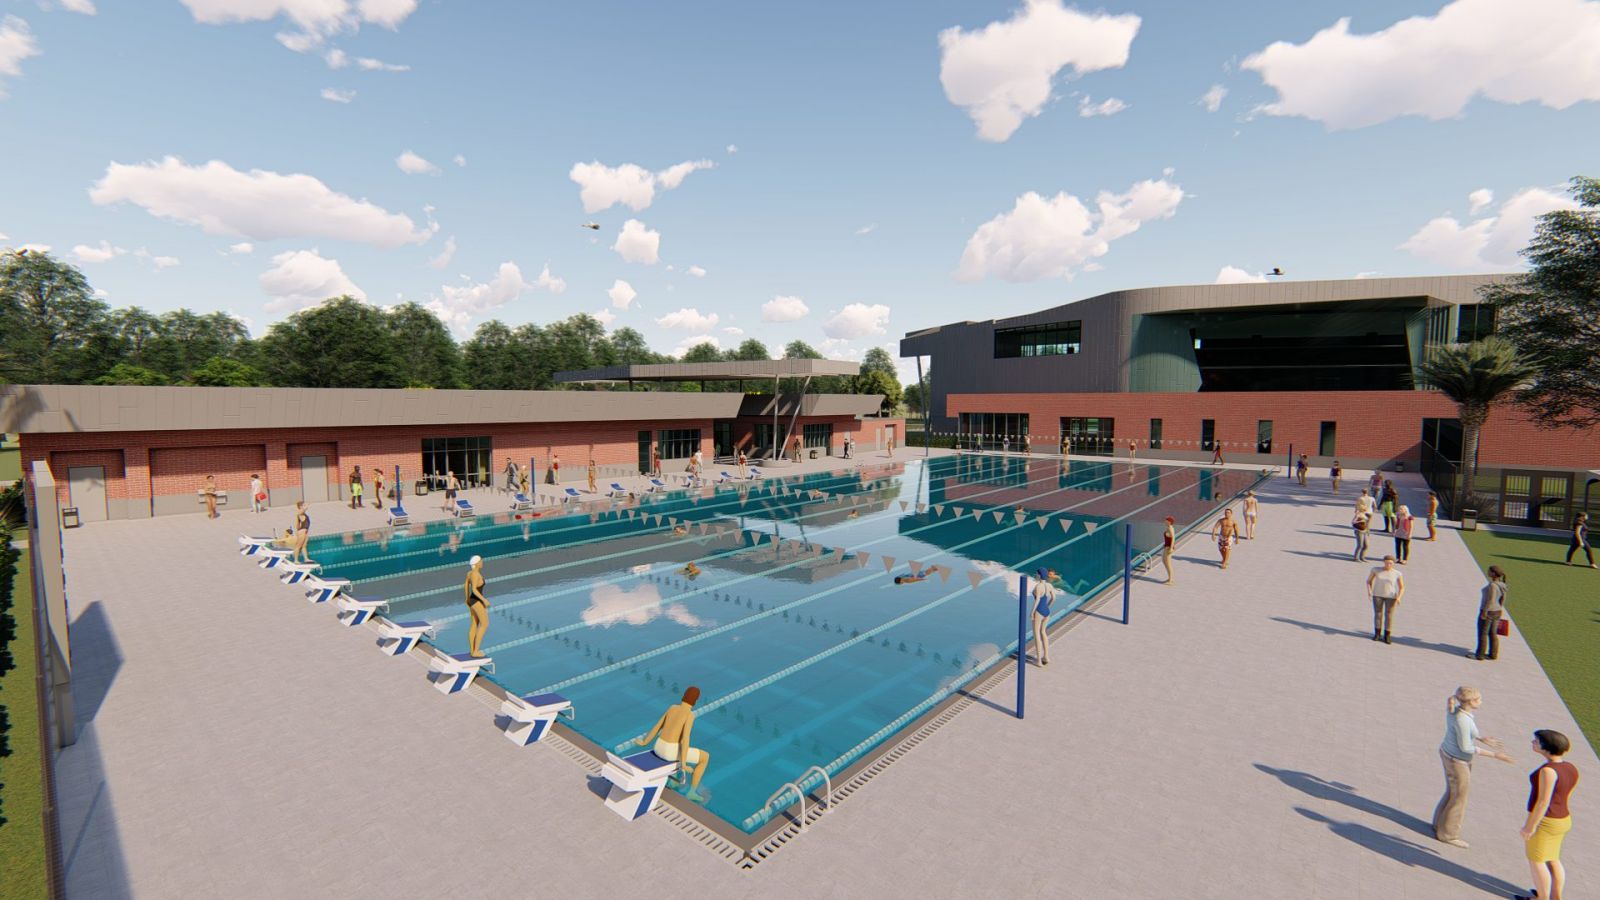 Thiết kế bể bơi thi đấu cần đảm bảo tiêu chuẩn nhiệt độ nước và ánh sáng bể bơi